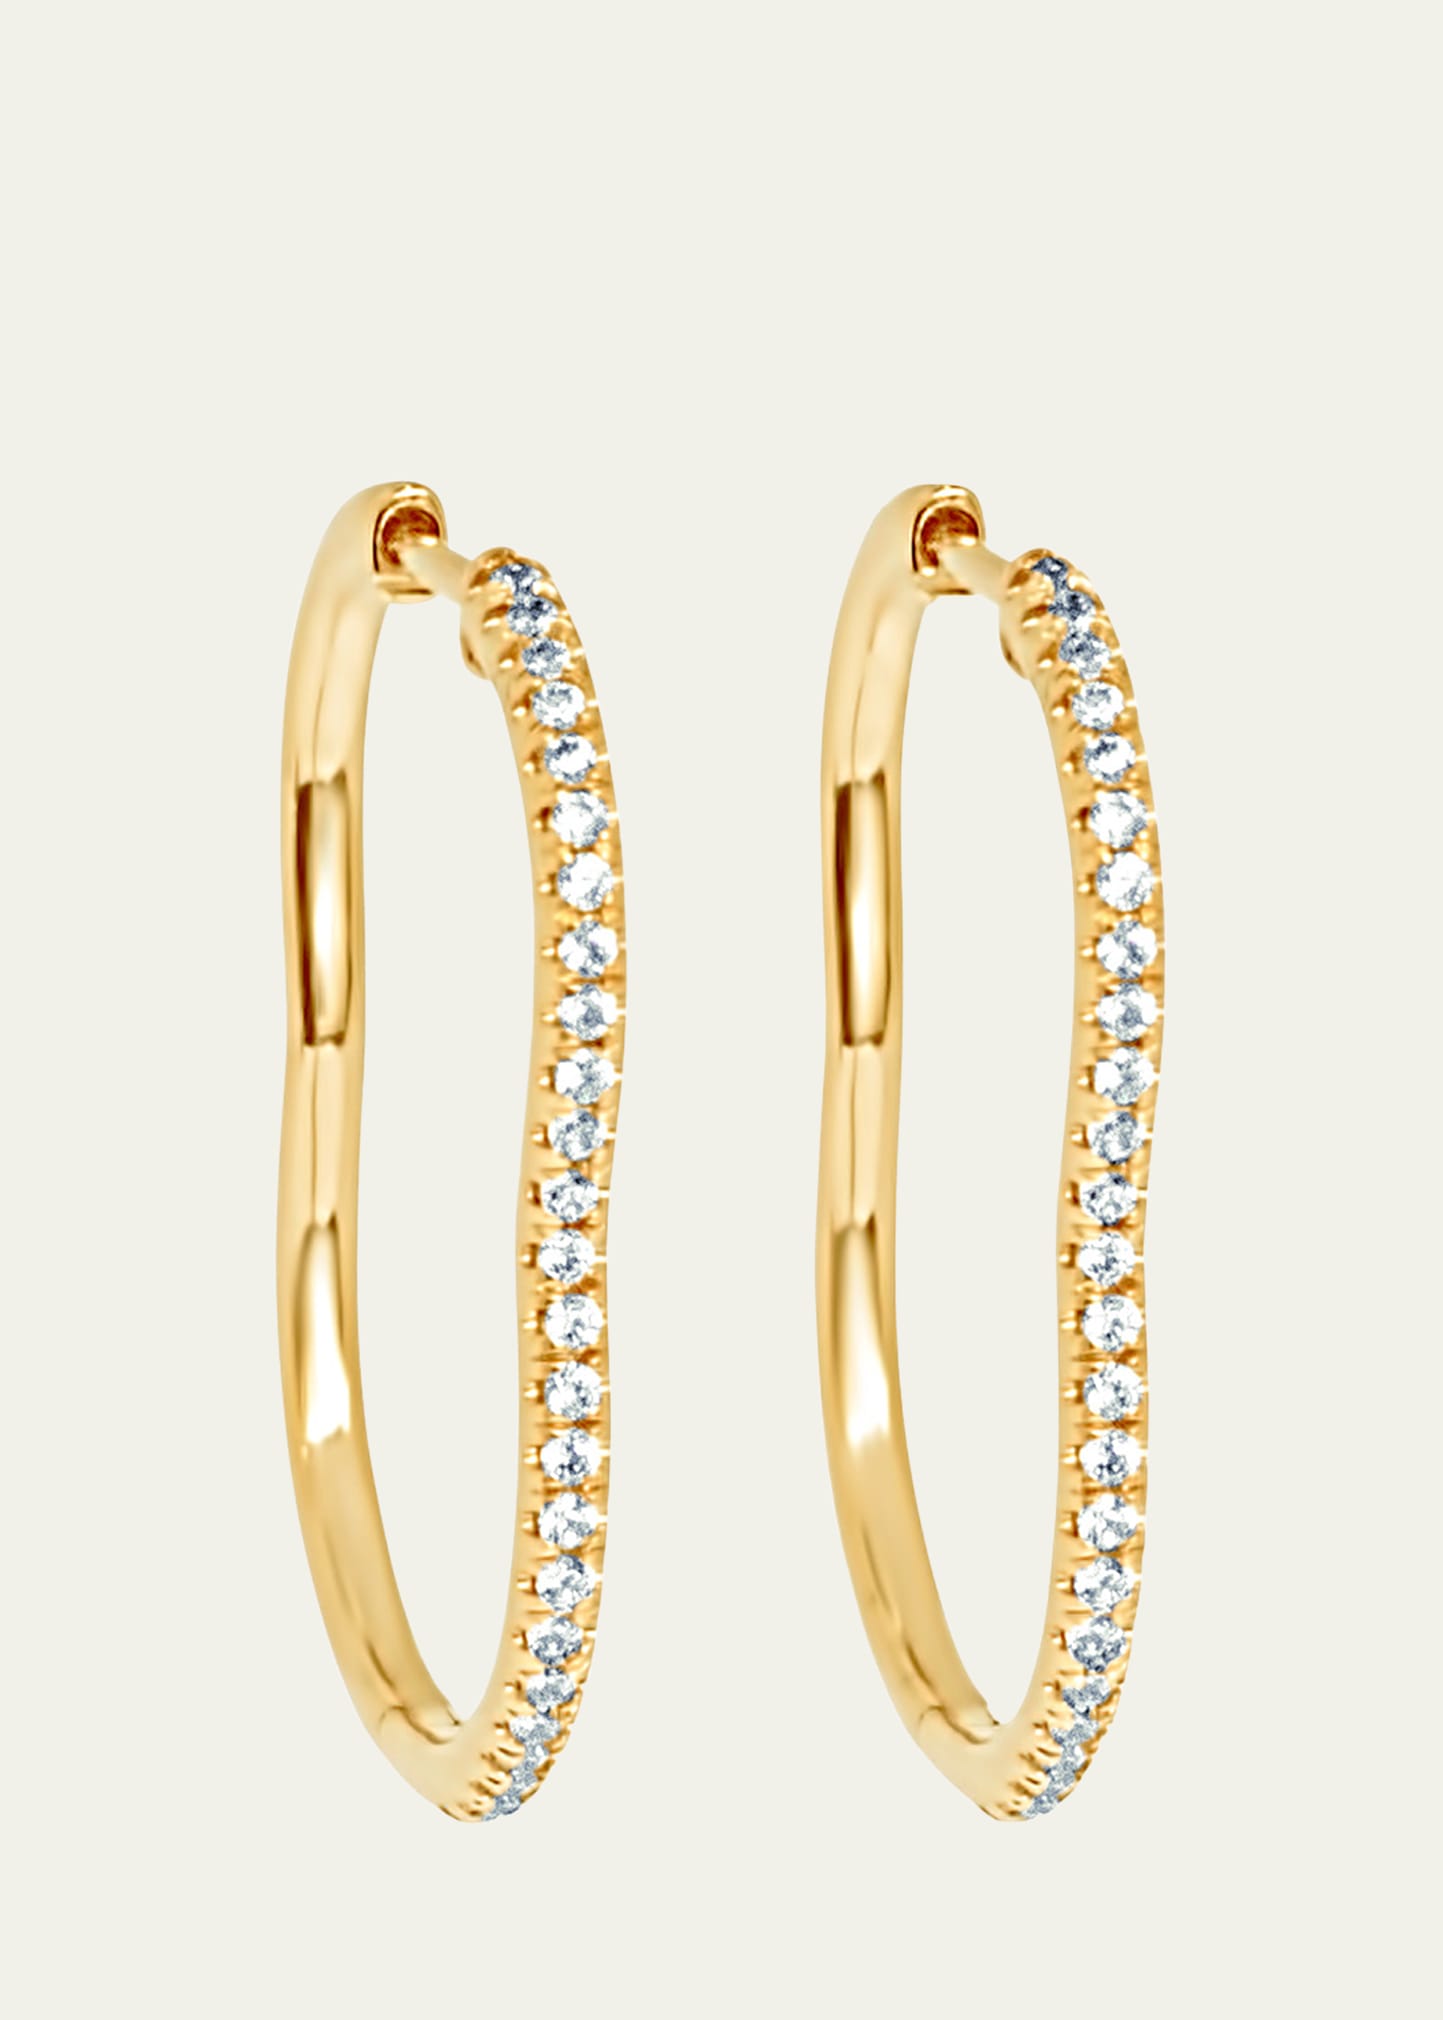 Almasika 18k Yellow Gold Berceau Pave Diamond Hoop Earrings, 0.44 Tcw In Yg